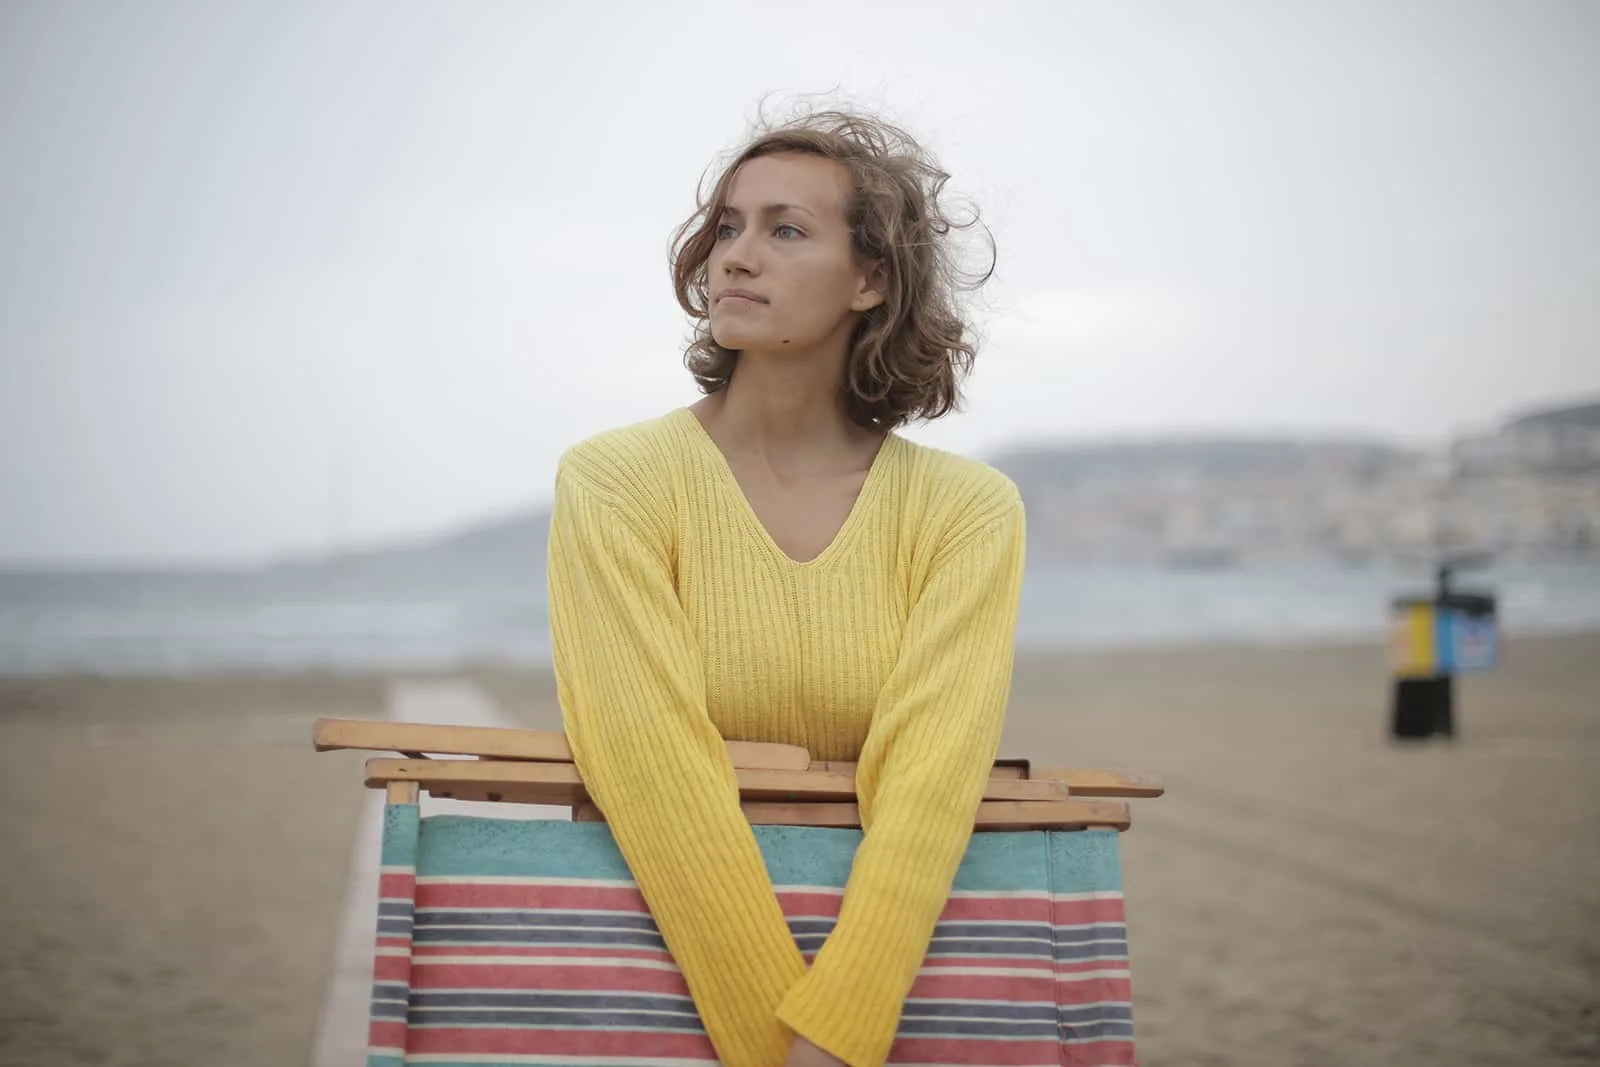 eine ruhige Frau, die einen gefalteten Liegestuhl hält, während sie am Strand steht